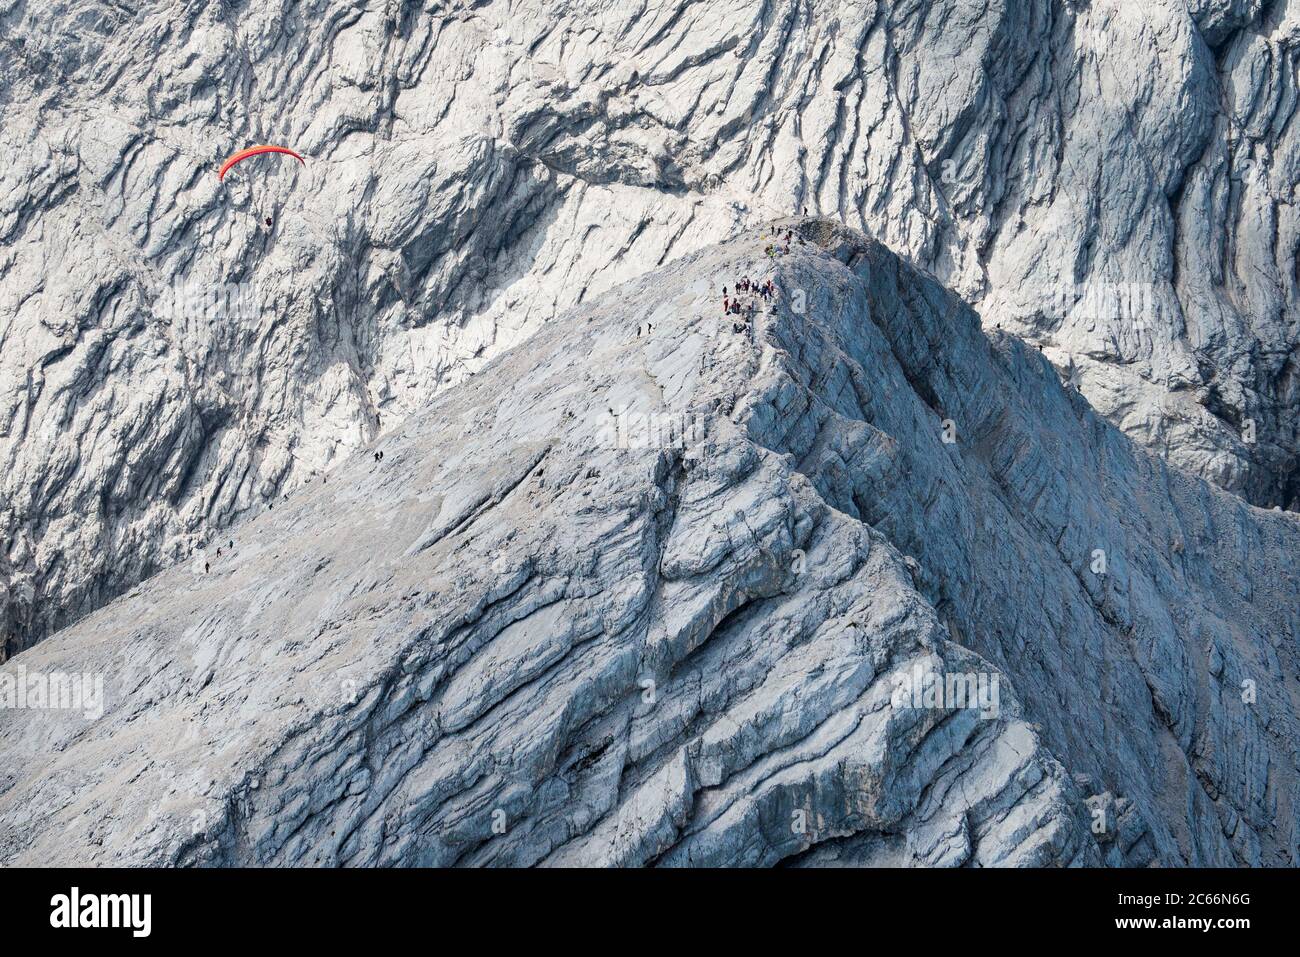 Alpspitze picco con alpinisti e parapendio, montagna Hochblassen sullo sfondo, foto aerea, Garmisch-Partenkirchen, Baviera, Germania Foto Stock